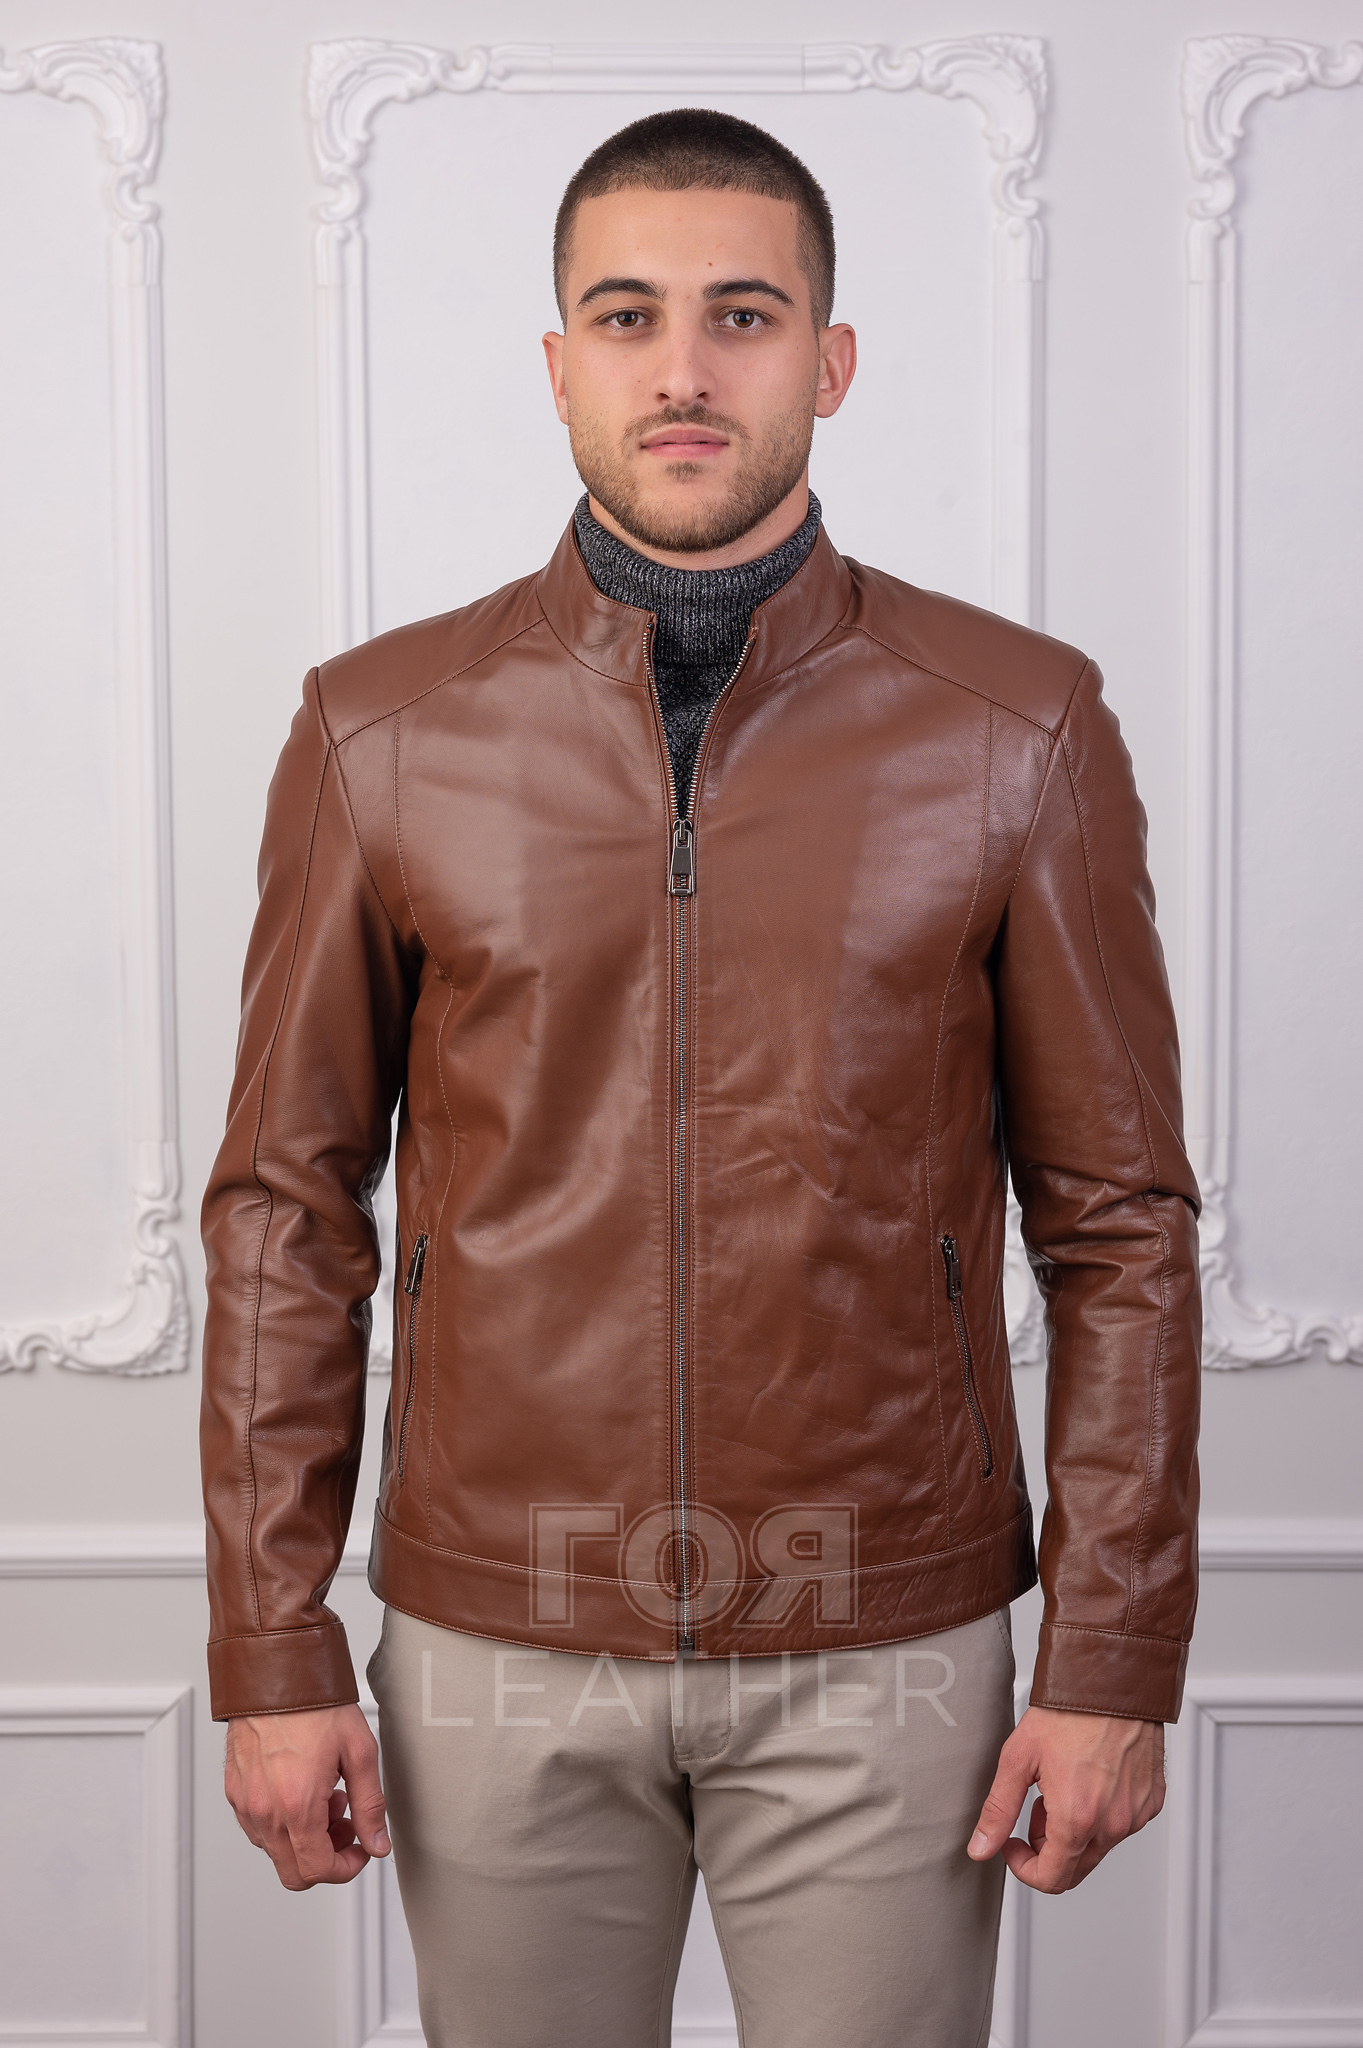 Мъжко кожено яке от ГОЯ Leather. Класически модел с изчистени линии. Подходящо както за делово ежедневие, така и за среща сприятели. За удобство маншетът се закопчава с капси. Има два вътрешни джоба.